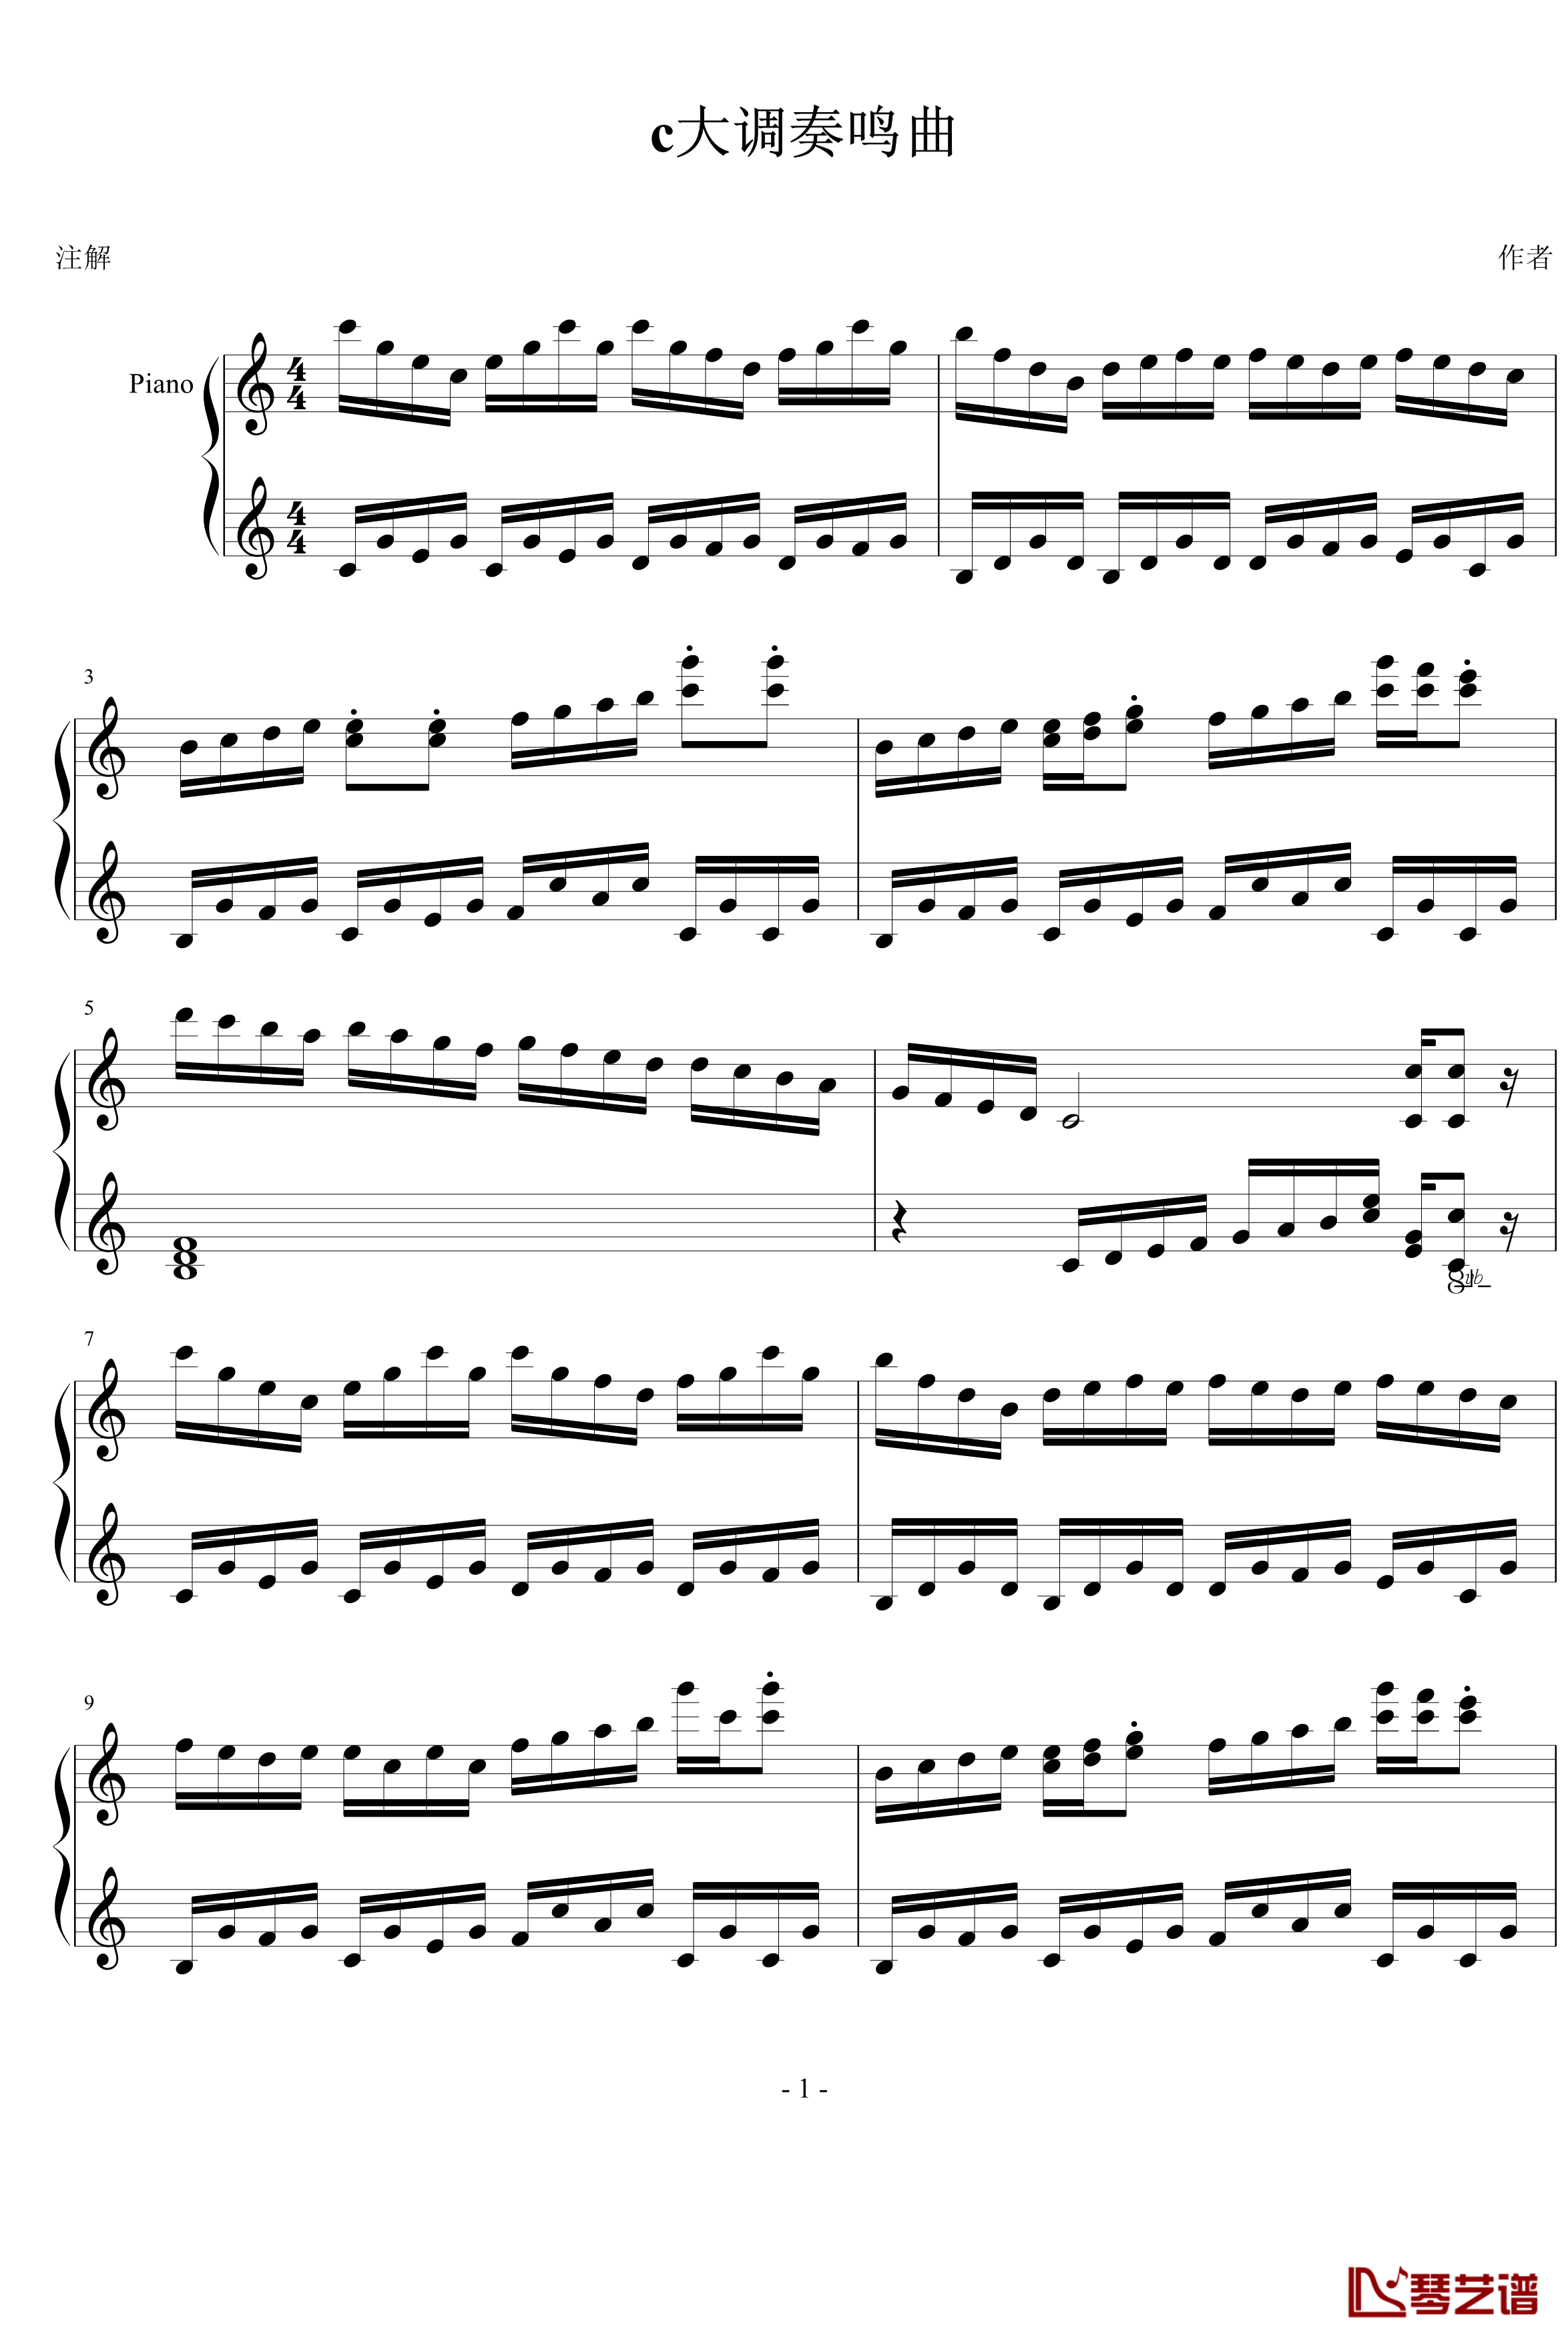 c大调奏鸣曲钢琴谱-尼柯1